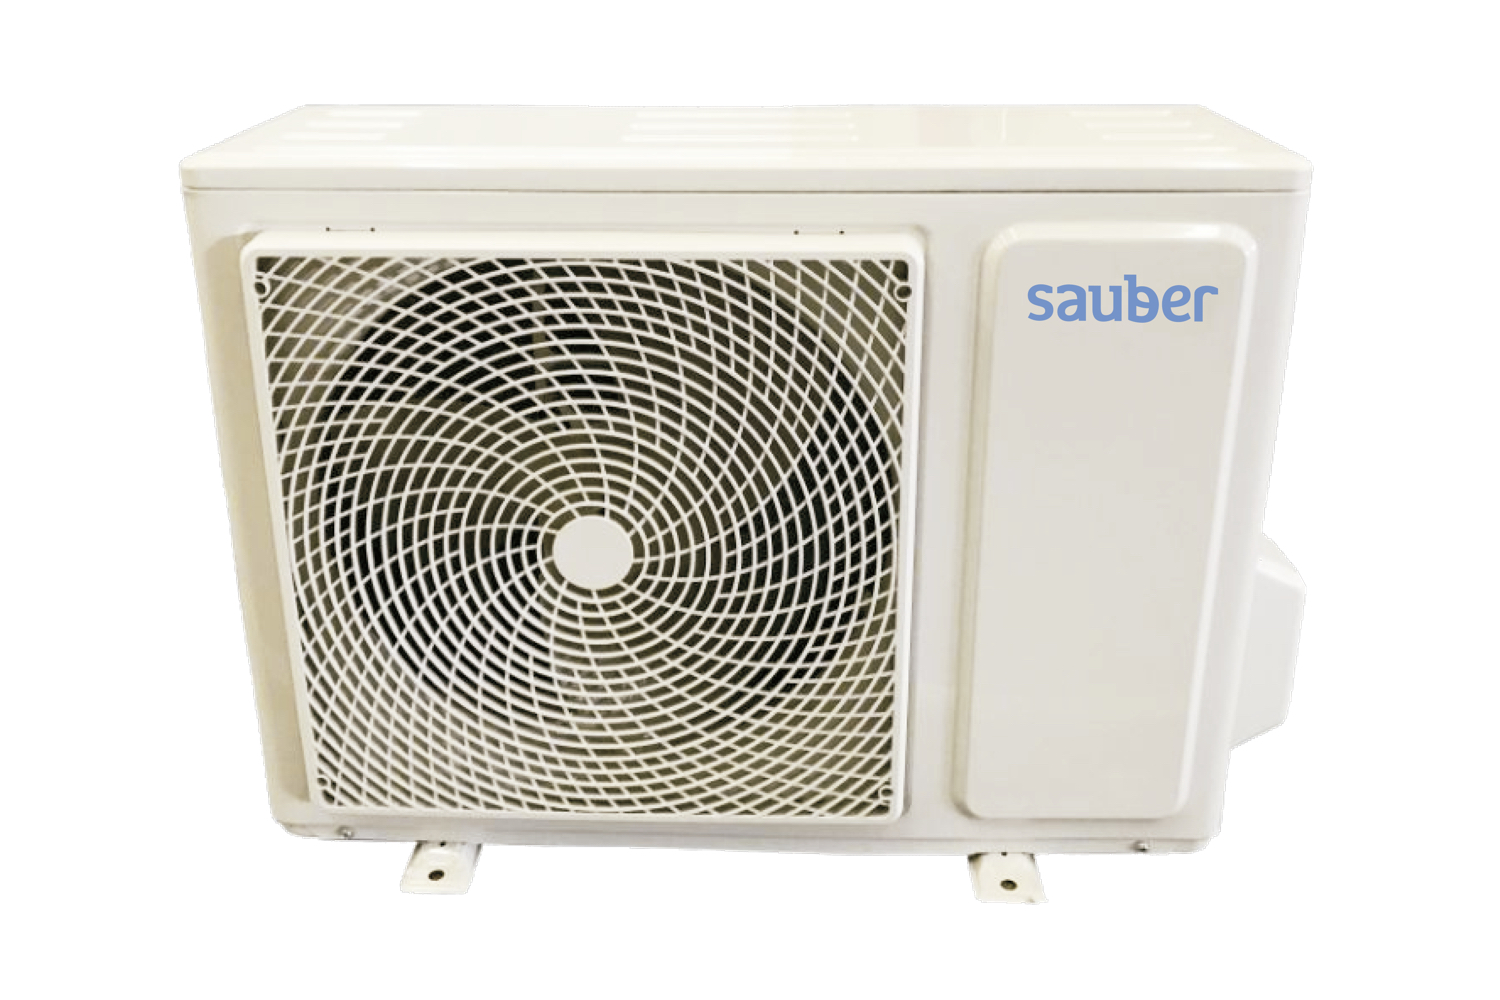 Sauber  Aire acondicionado serie 3-4500 inverter 4500 frigorias split 1x1